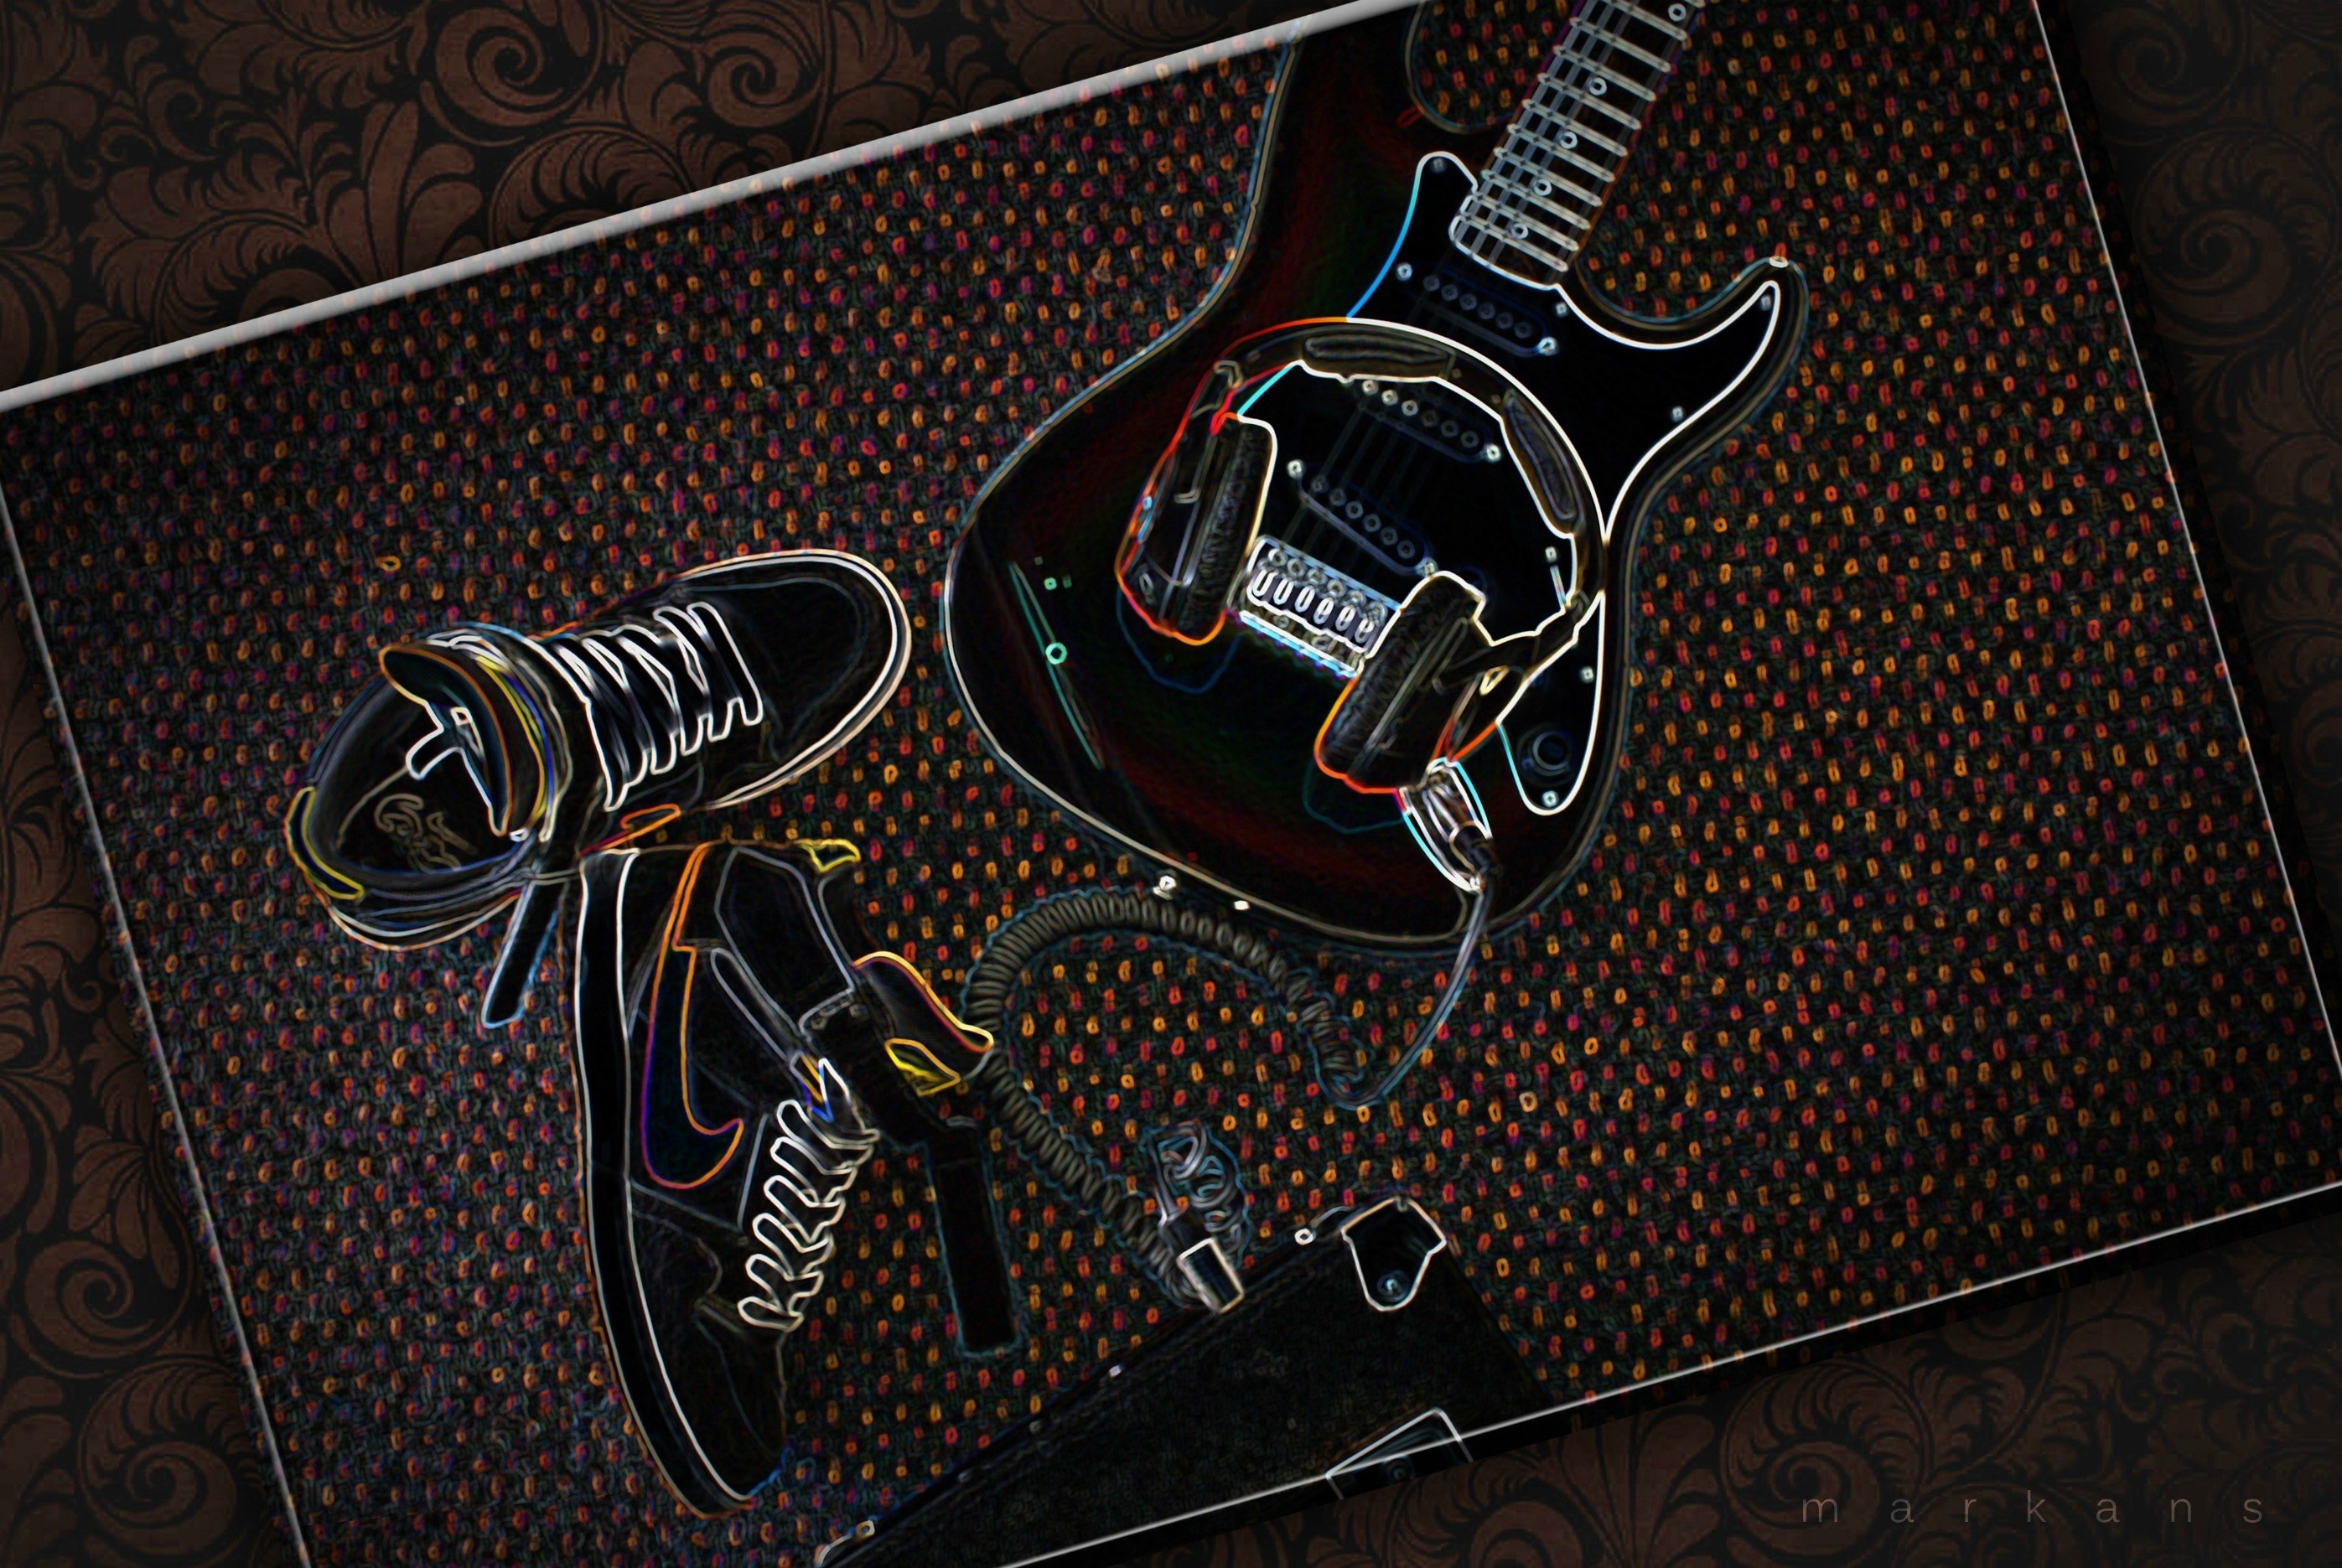 2794x1871 2017-03-02 - guitar wallpaper desktop nexus wallpaper, #1861207